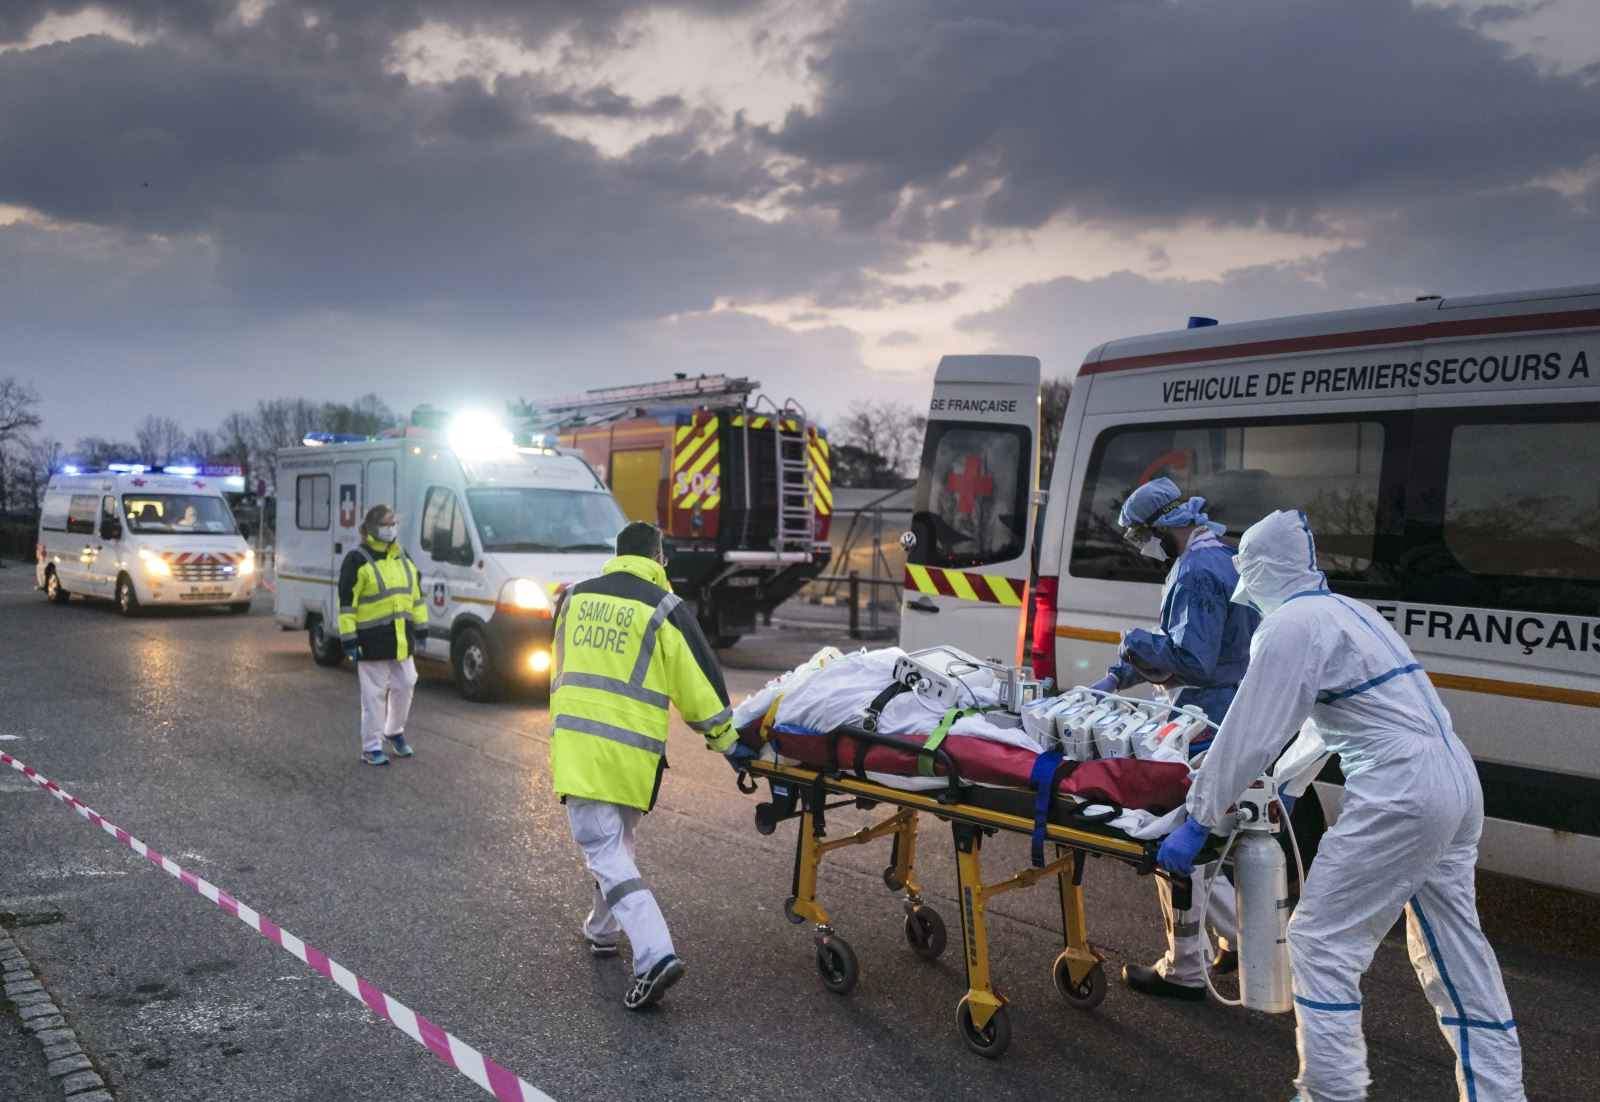 Lực lượng y tế khẩn cấp chuyển bệnh nhân nhiễm COVID-19 từ bệnh viện ở Mulhouse (Pháp) lên xe cứu thương để sơ tán tới các bệnh viện ở phía Tây nước Pháp ngày 29/3/2020.